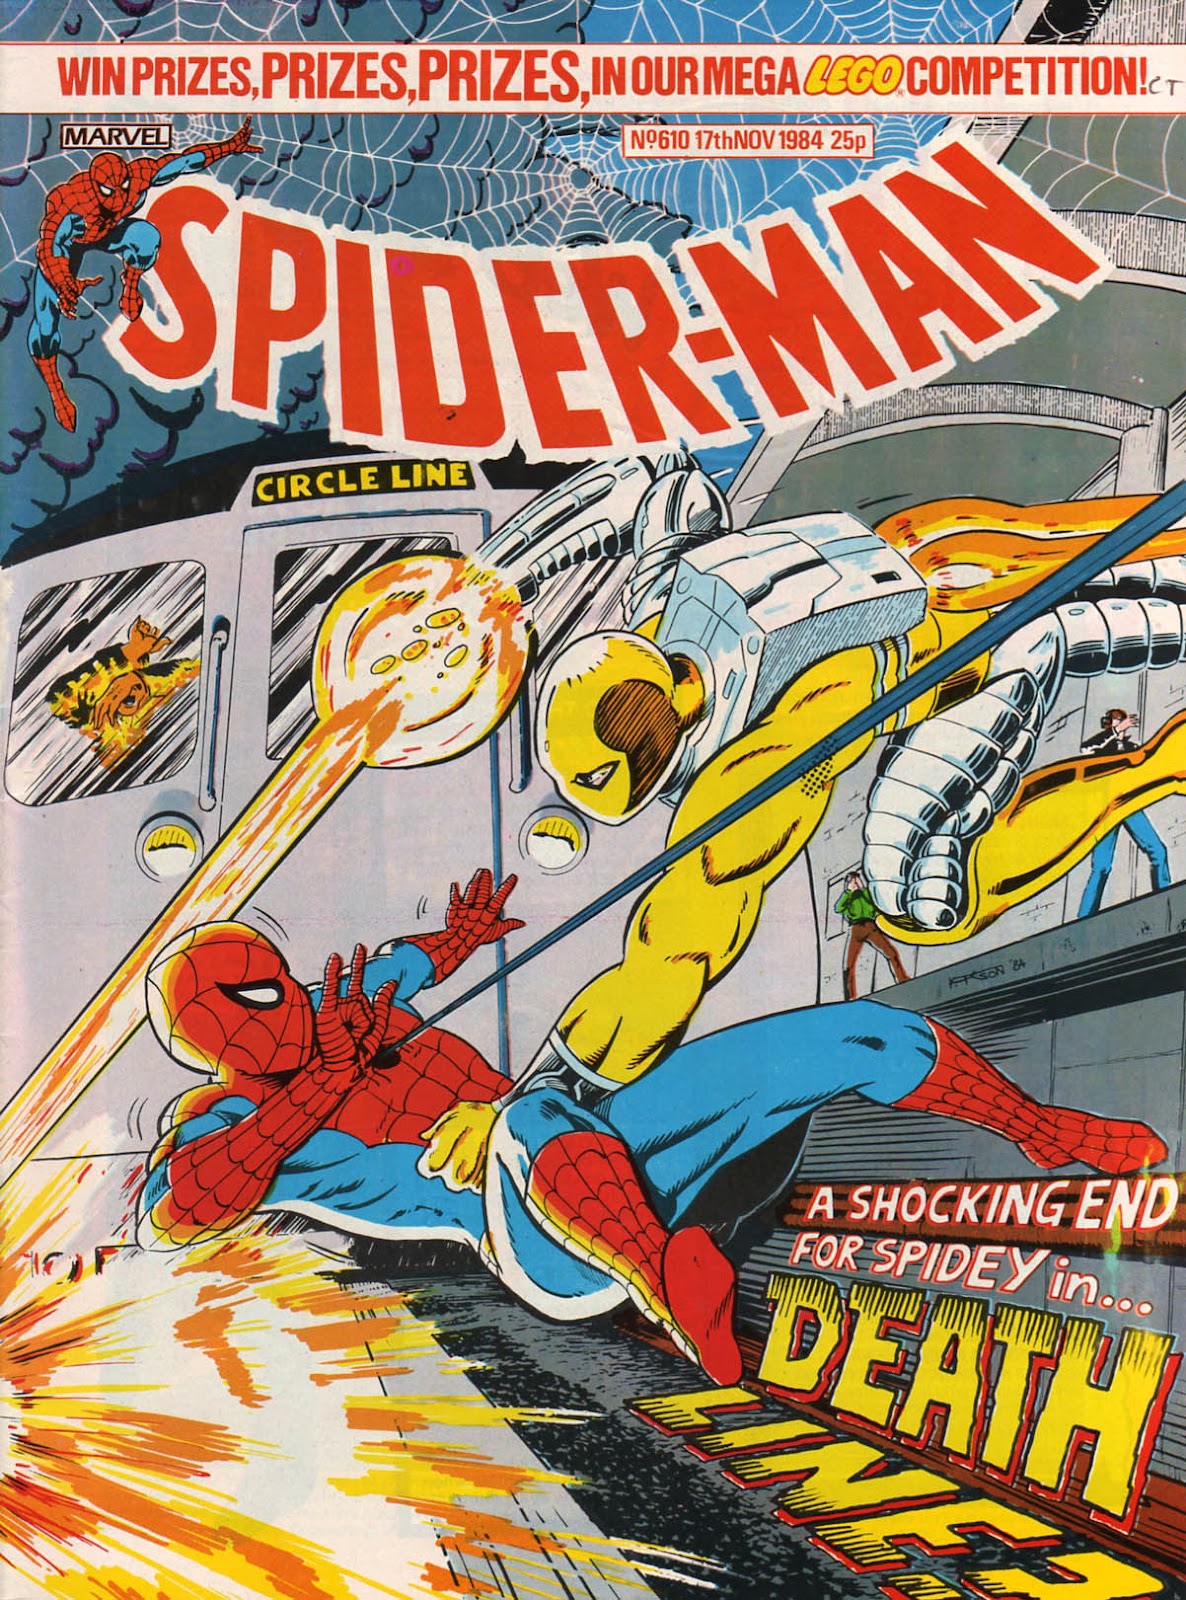 Spider-Man (1984) 610 Page 1